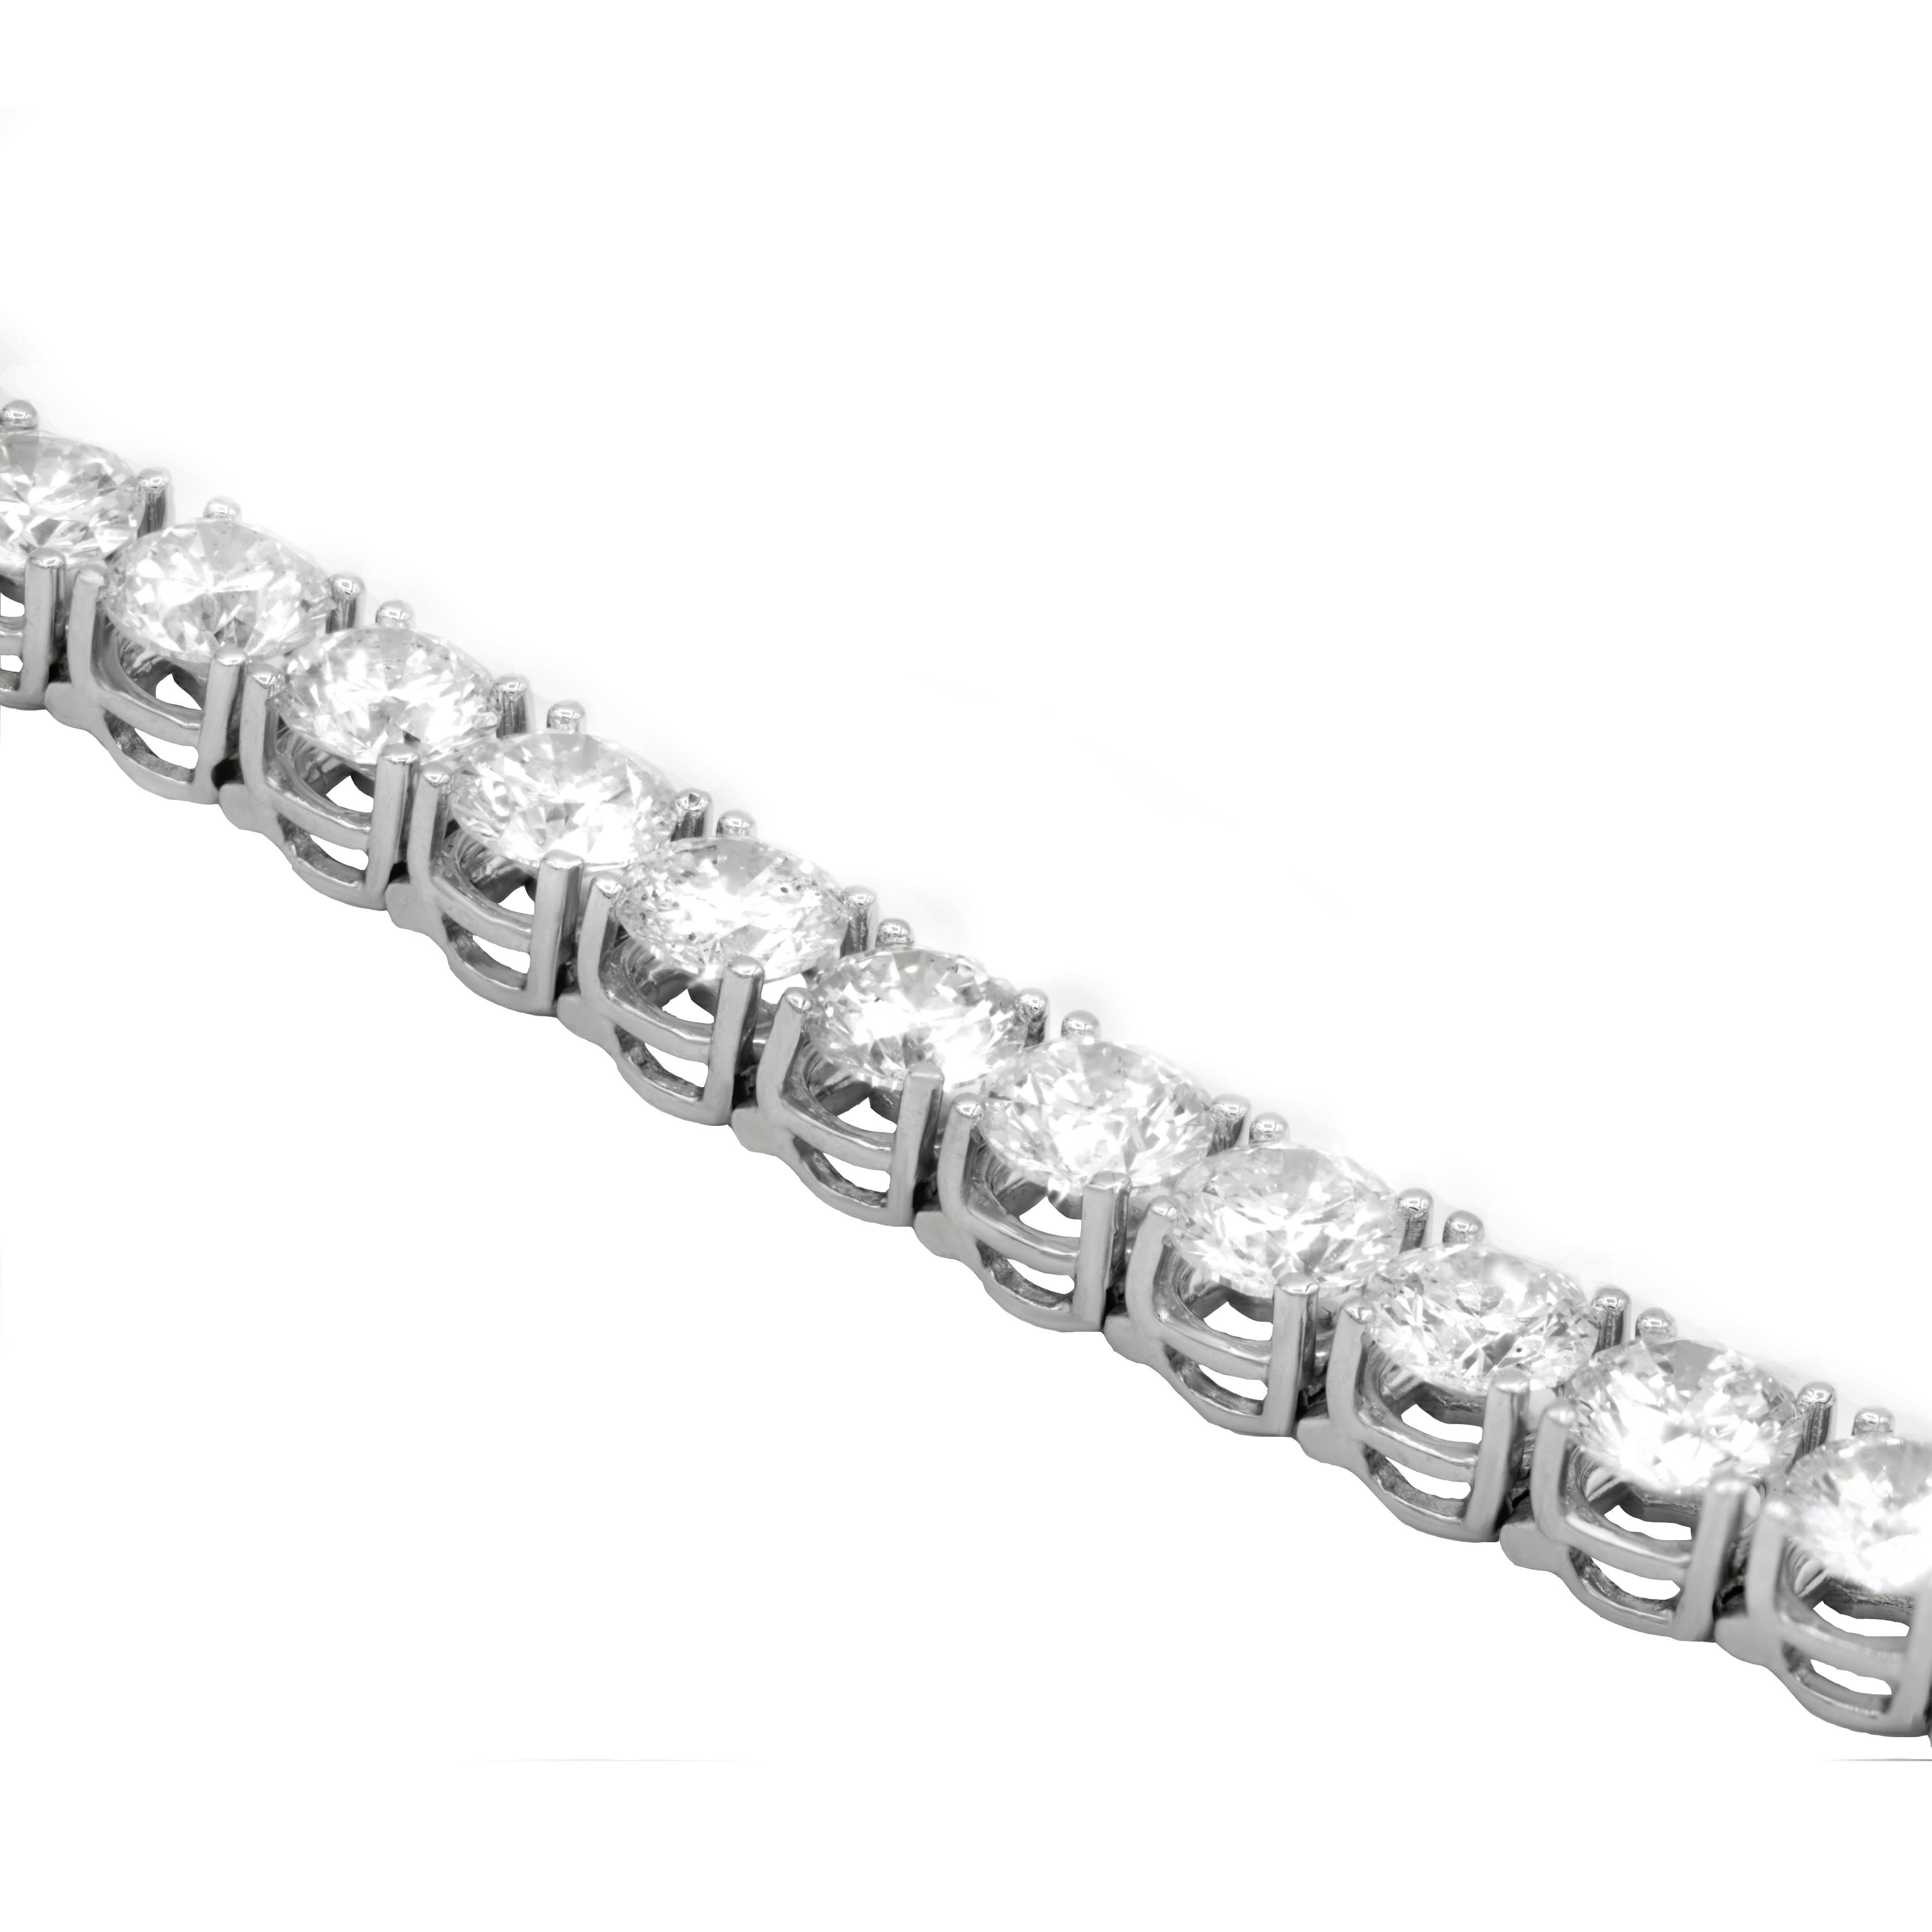 Classic four prong diamond tennis bracelet set with round brilliant cut diamonds 

Composition:

14K white gold
10.60 ct diamonds
Length: 7